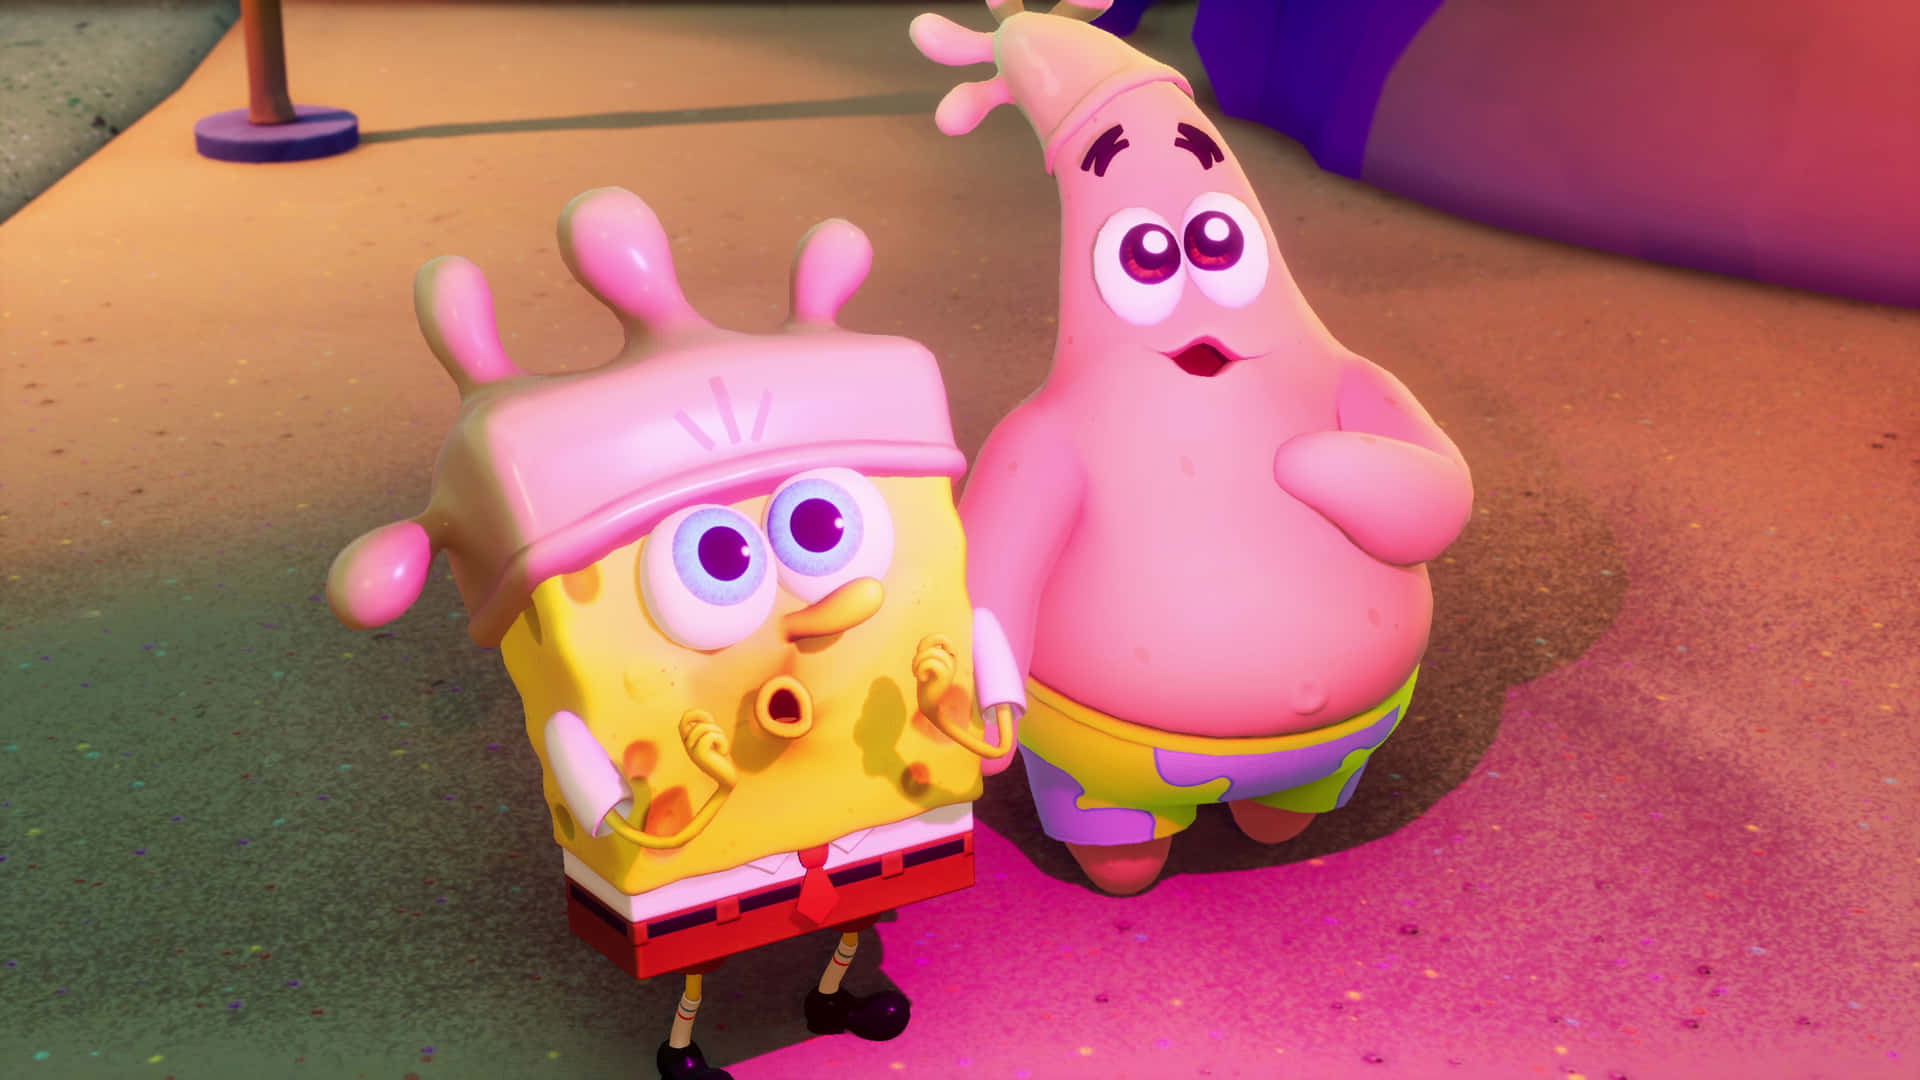 Spongebob og Patrick med handsker hatte billede.